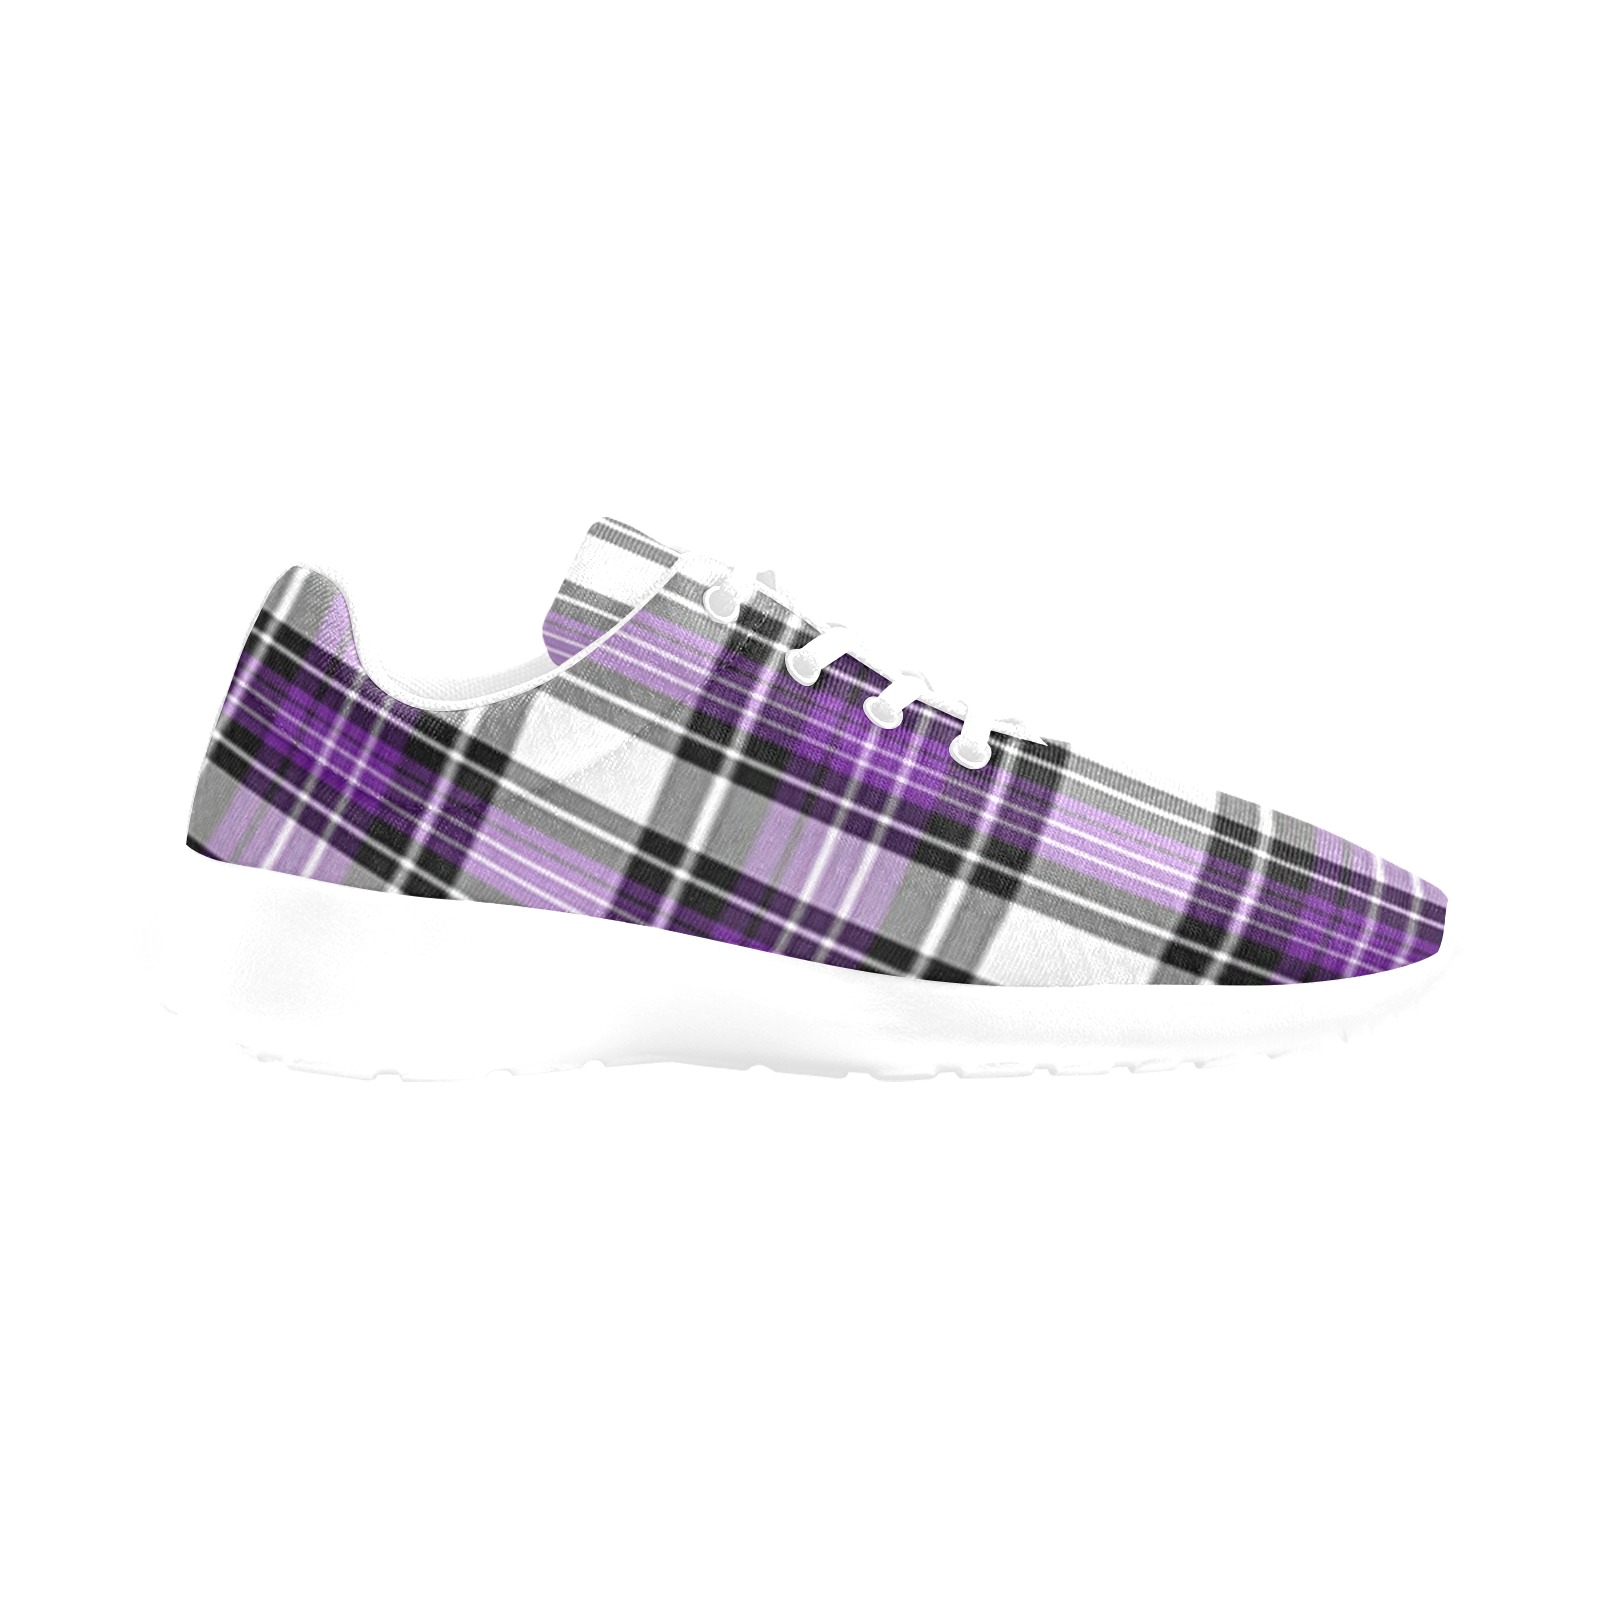 Purple Black Plaid Women's Athletic Shoes (Model 0200)